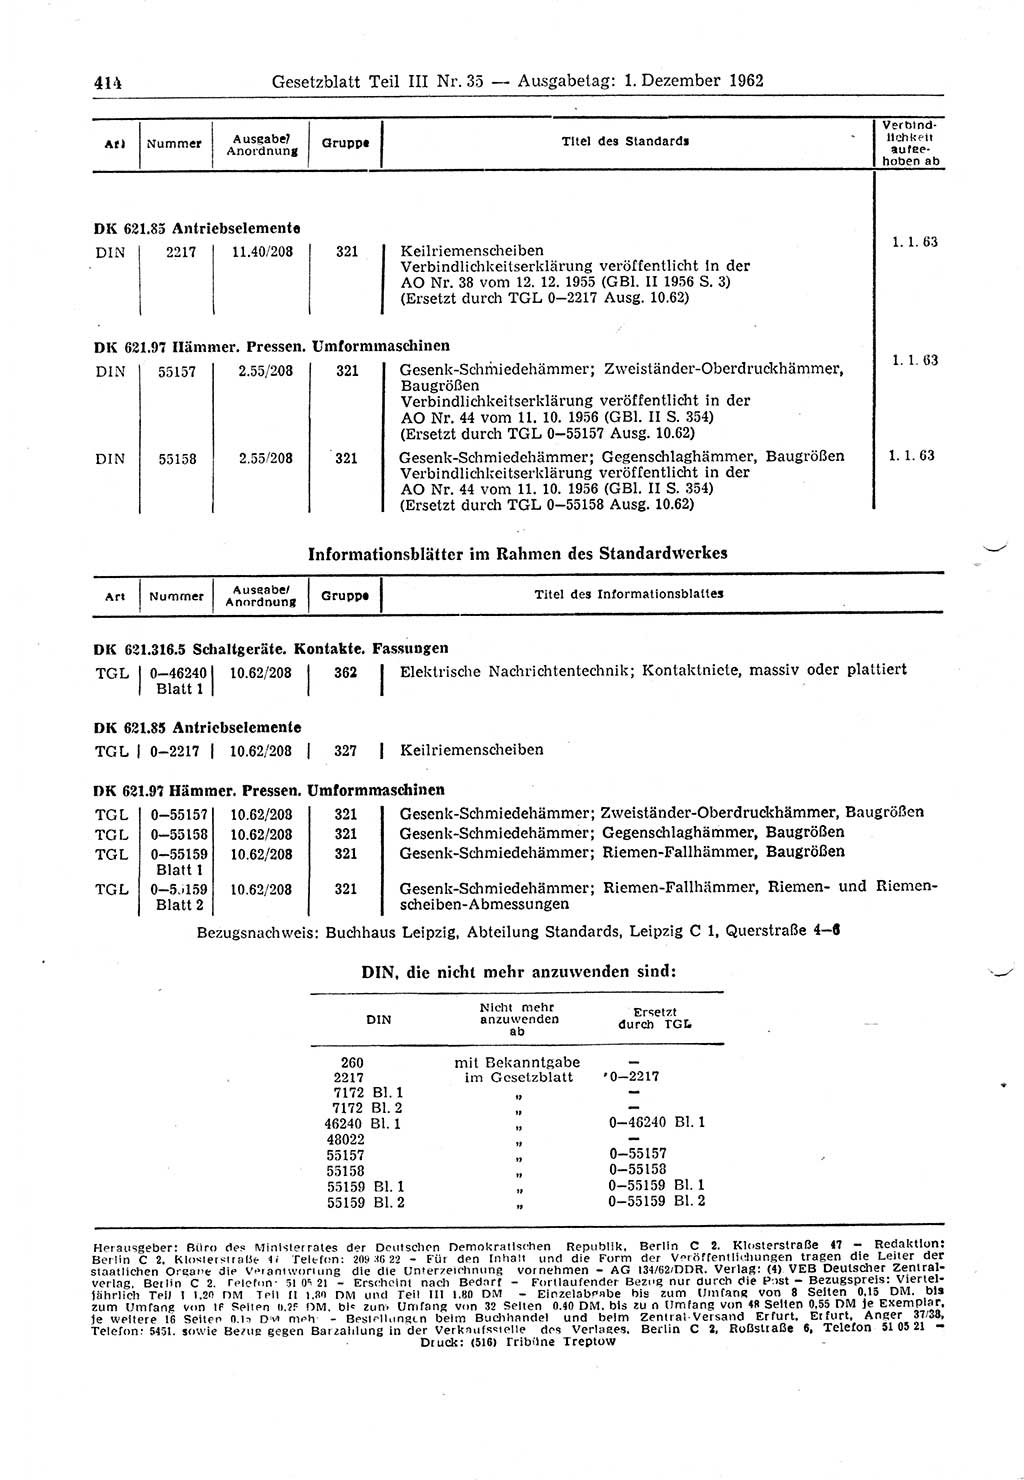 Gesetzblatt (GBl.) der Deutschen Demokratischen Republik (DDR) Teil ⅠⅠⅠ 1962, Seite 414 (GBl. DDR ⅠⅠⅠ 1962, S. 414)